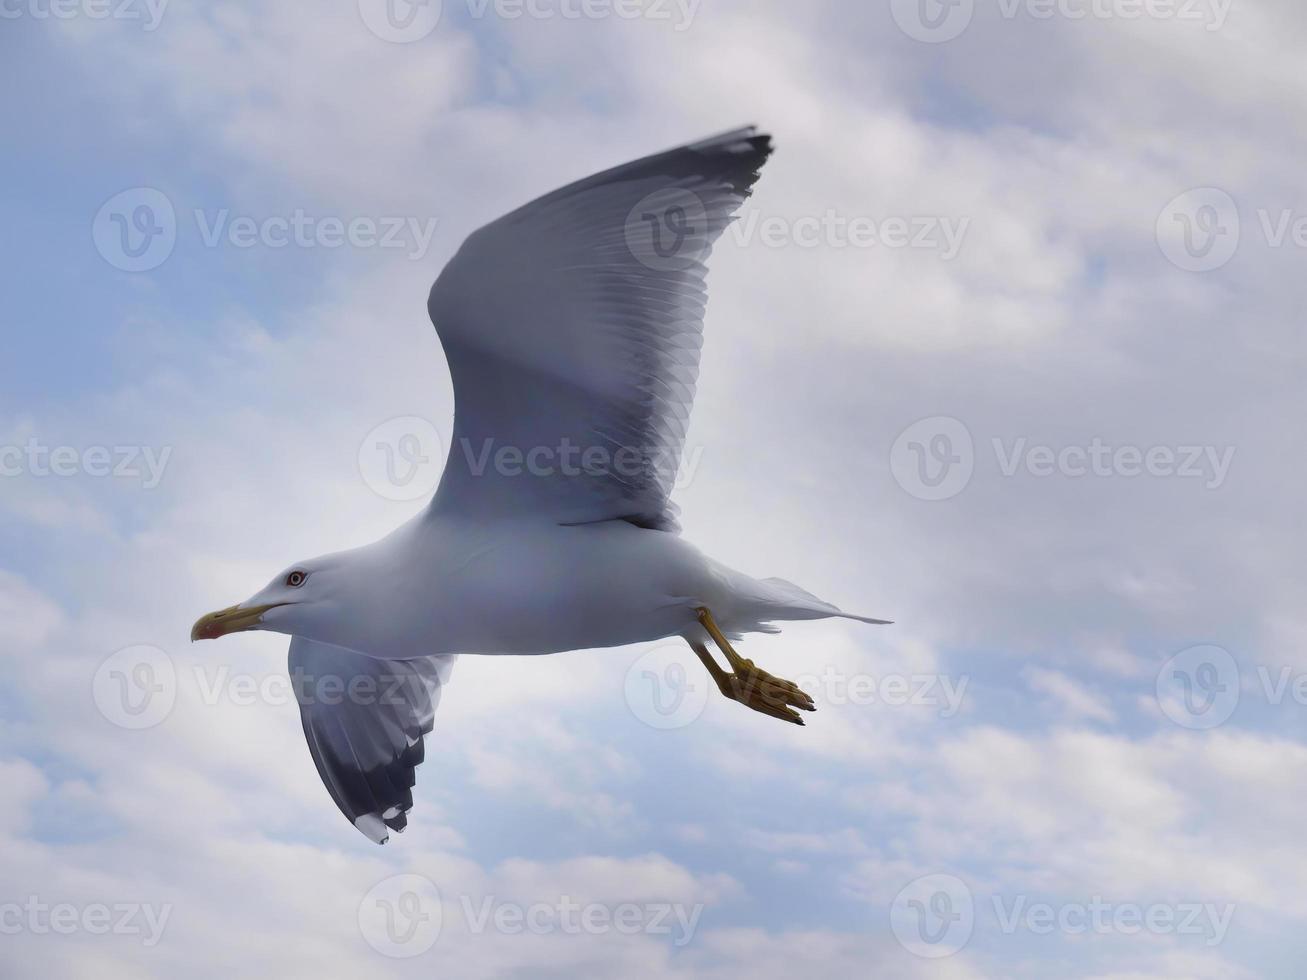 låg vinkel se av en fiskmås flygande i de luft, spridning vinge, skön blå himmel vit moln bakgrund foto